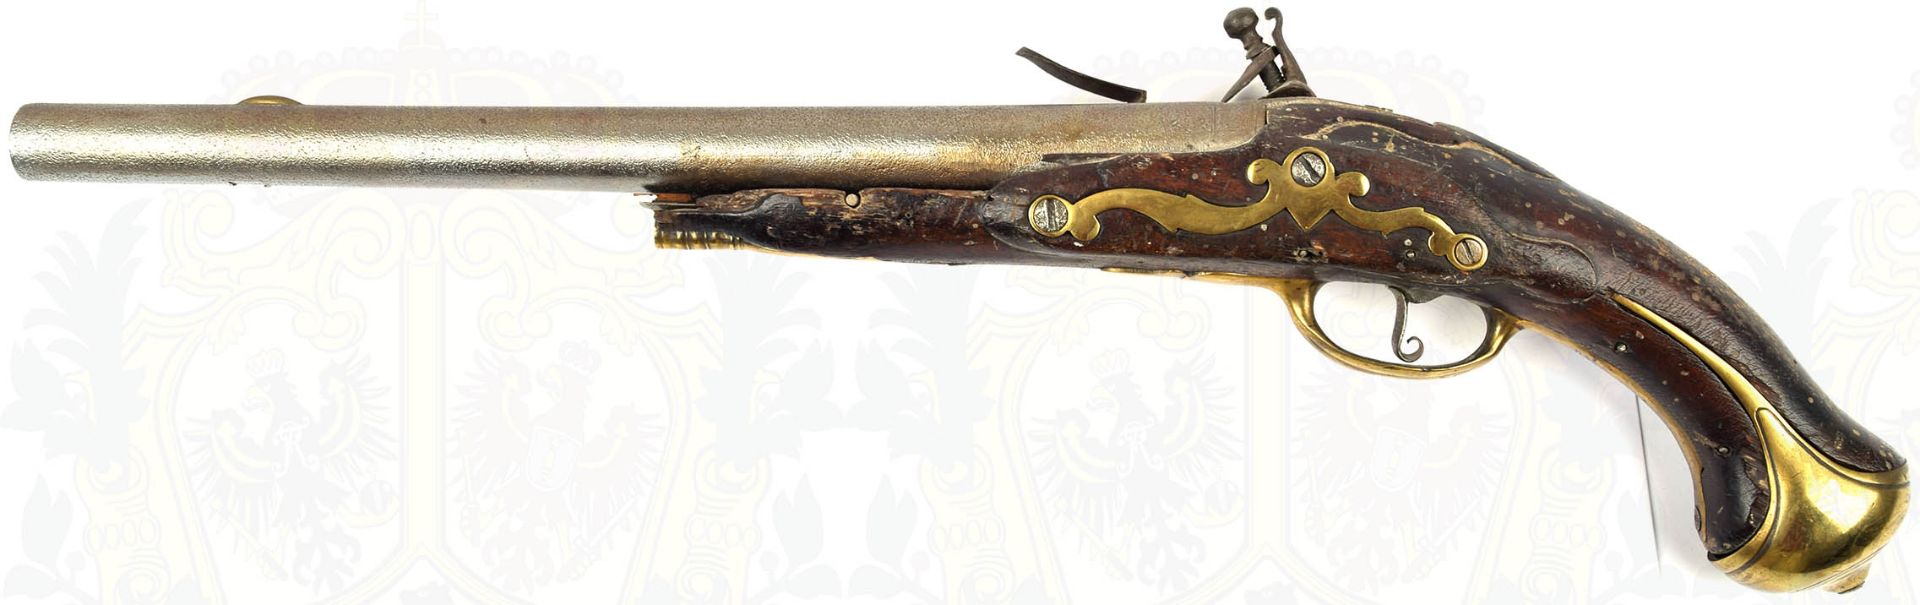 STEINSCHLOSSPISTOLE, ähnlich d. Österreichischen Kavalleriepistole 1744, runder Lauf, Kal. ca. 19mm, - Bild 3 aus 6